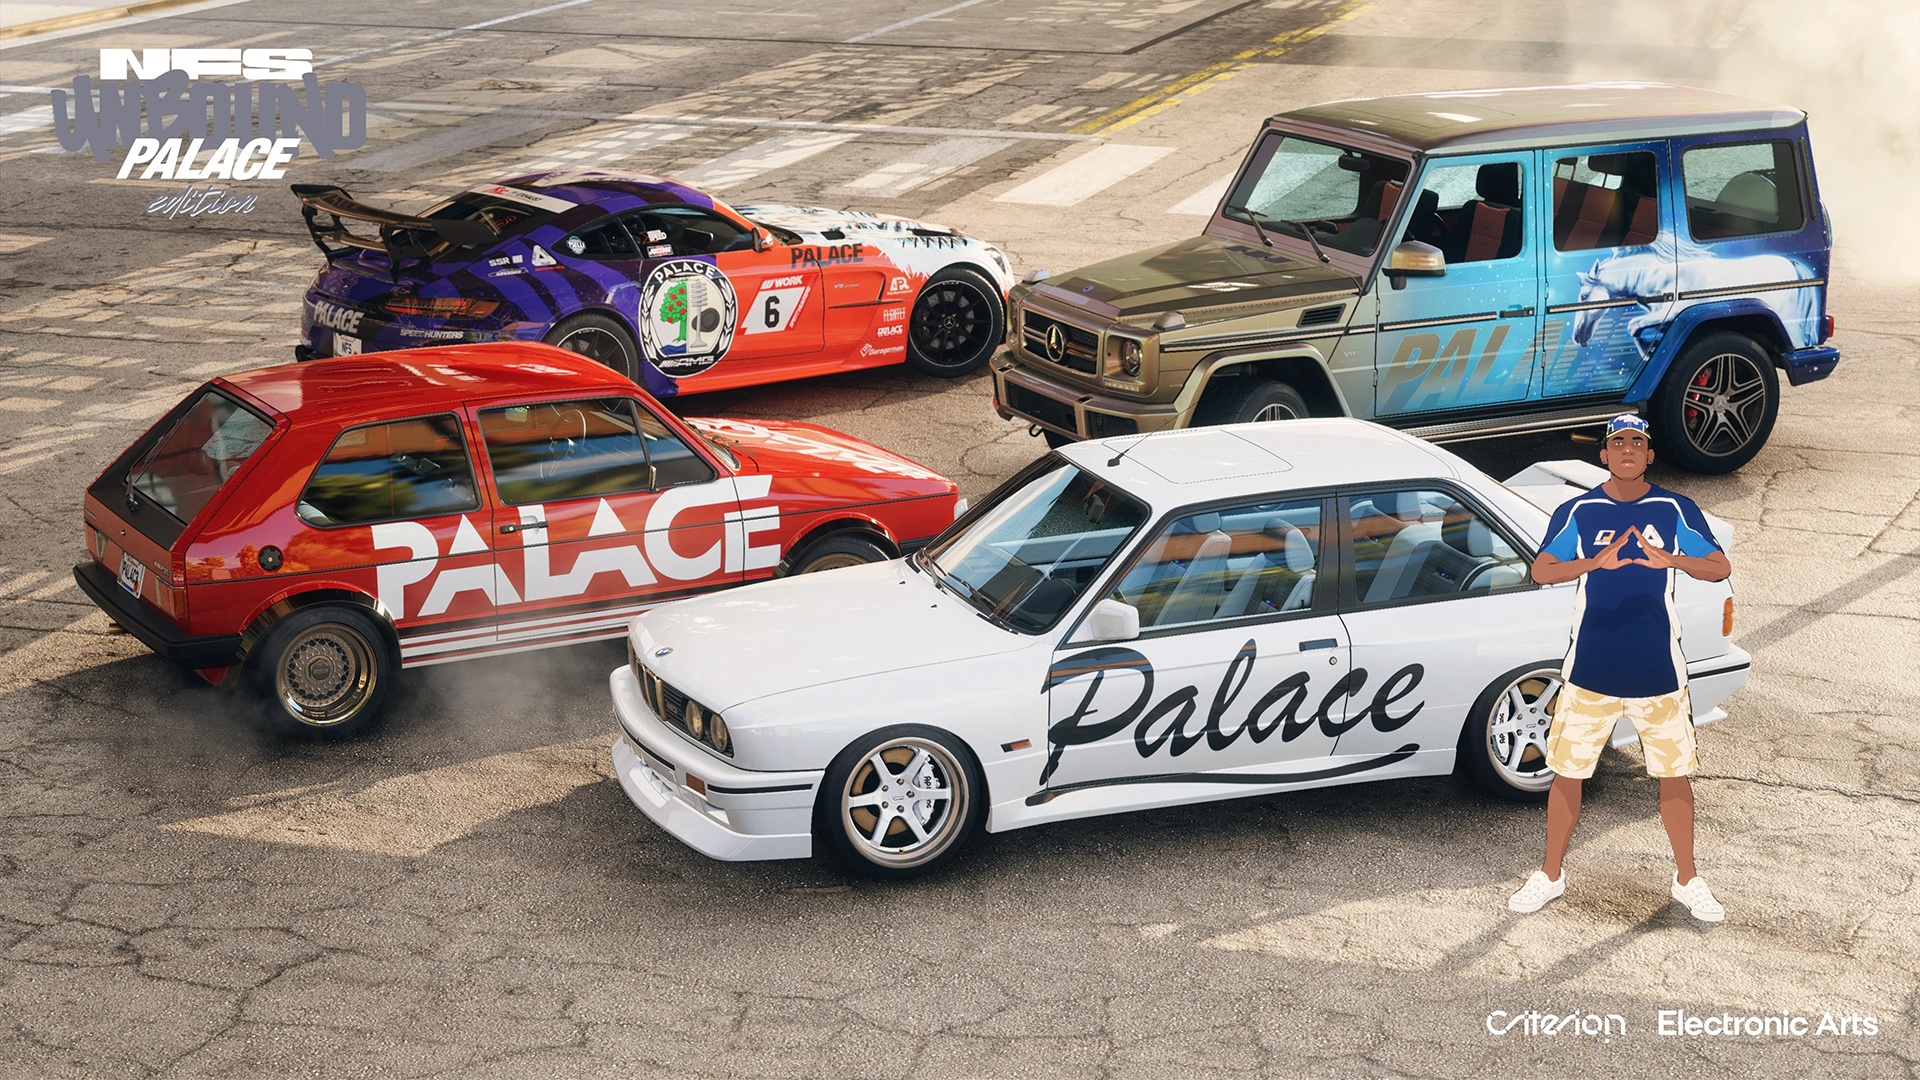 (Estes trabalhos de pintura para carros seleccionados estão incluídos na Edição Palace da Need for Speed Unbound.)